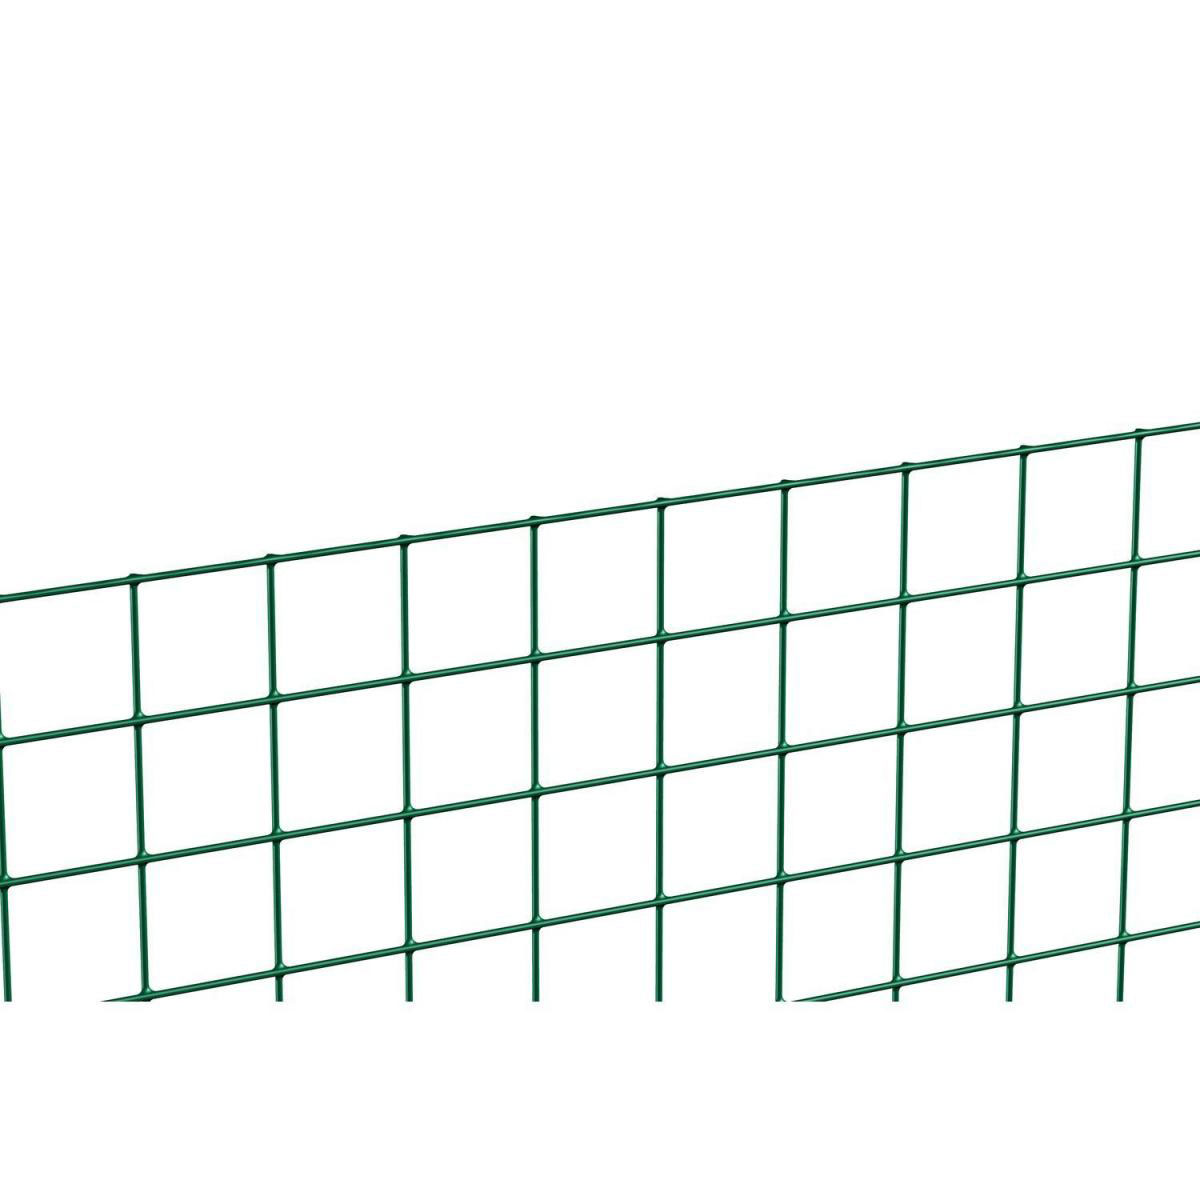 Schweißgitter grün, Länge 5 Meter, Höhe 50 cm, Masche 19x19 mm